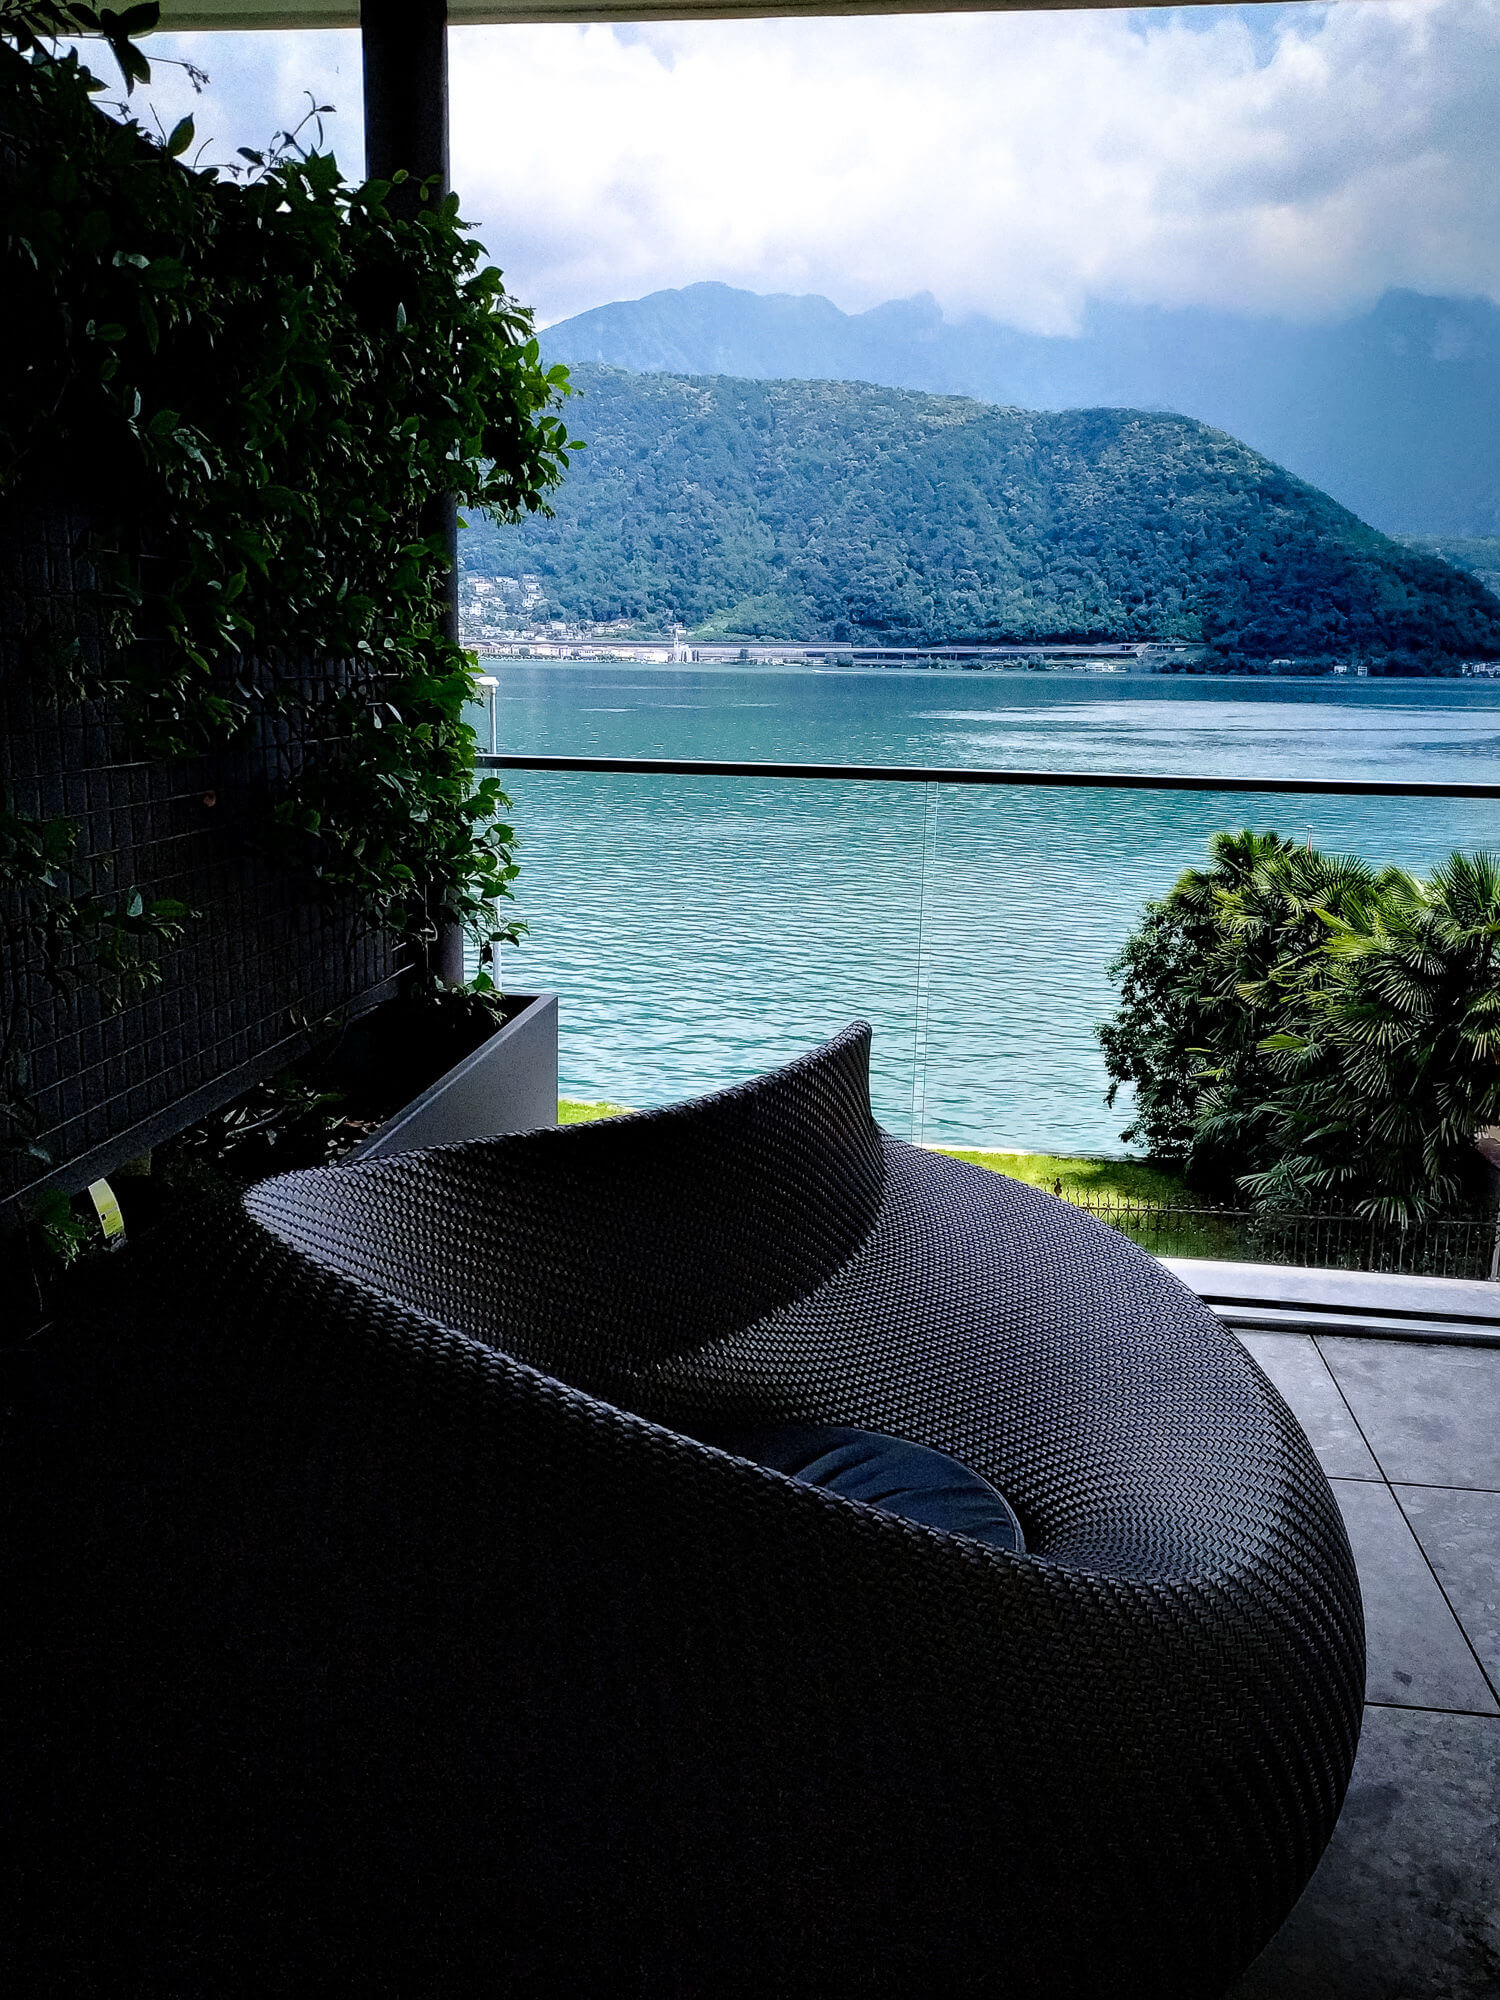 Reisetipps - Review - Urlaub in der Schweiz, in Melide, Lugano 63